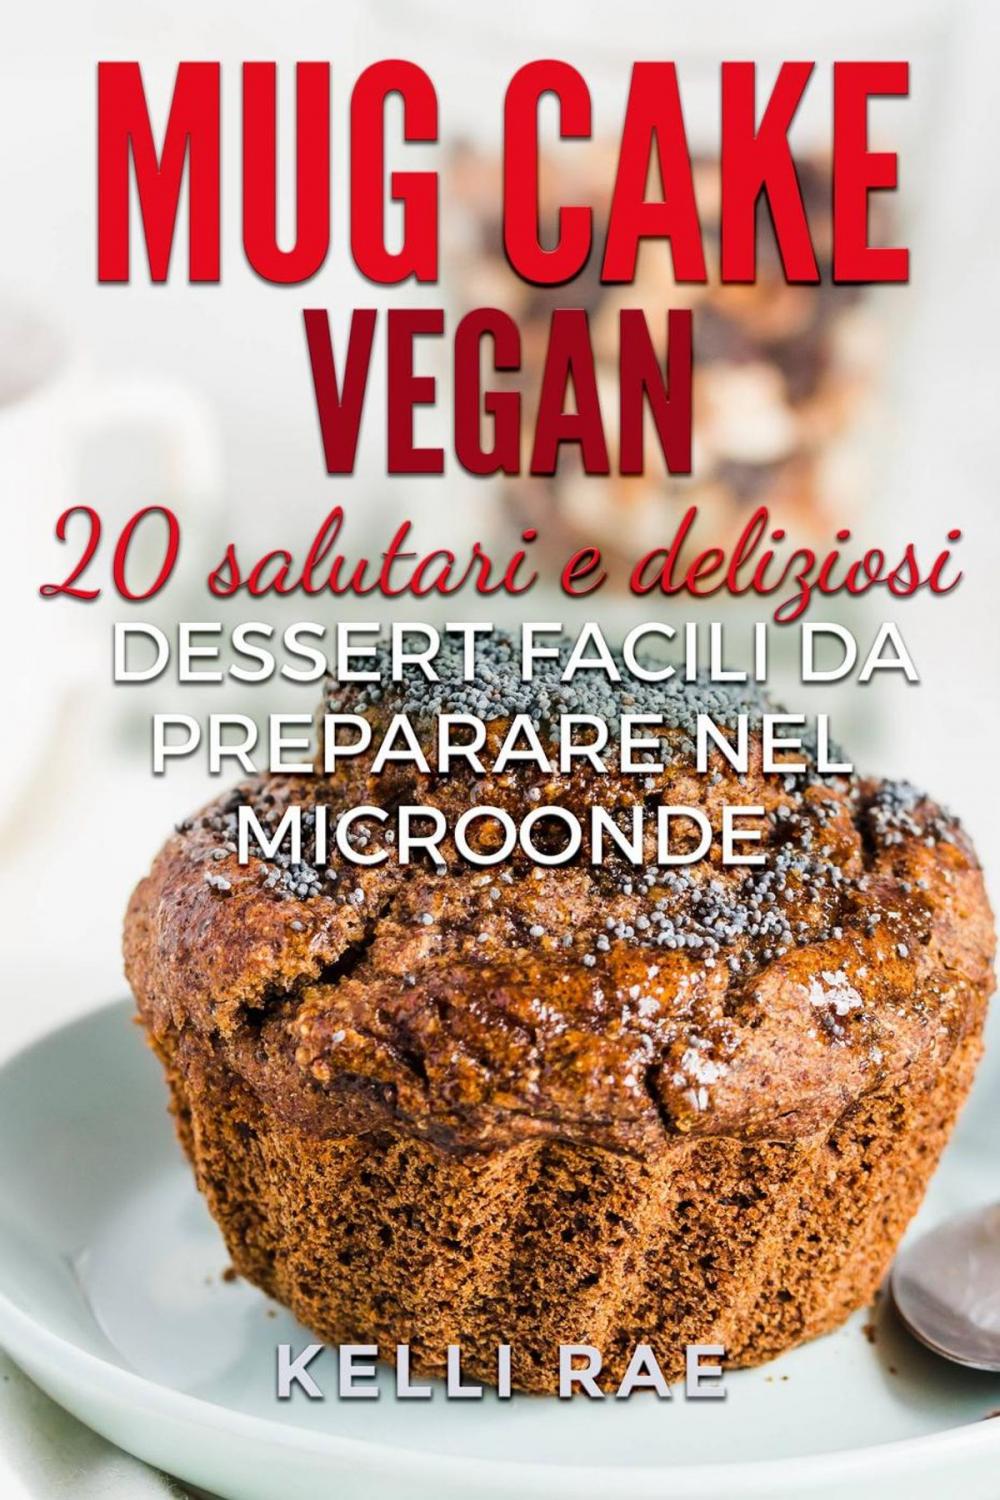 Big bigCover of Mug Cake Vegan: 20 salutari e deliziosi dessert, facili da preparare nel microonde.